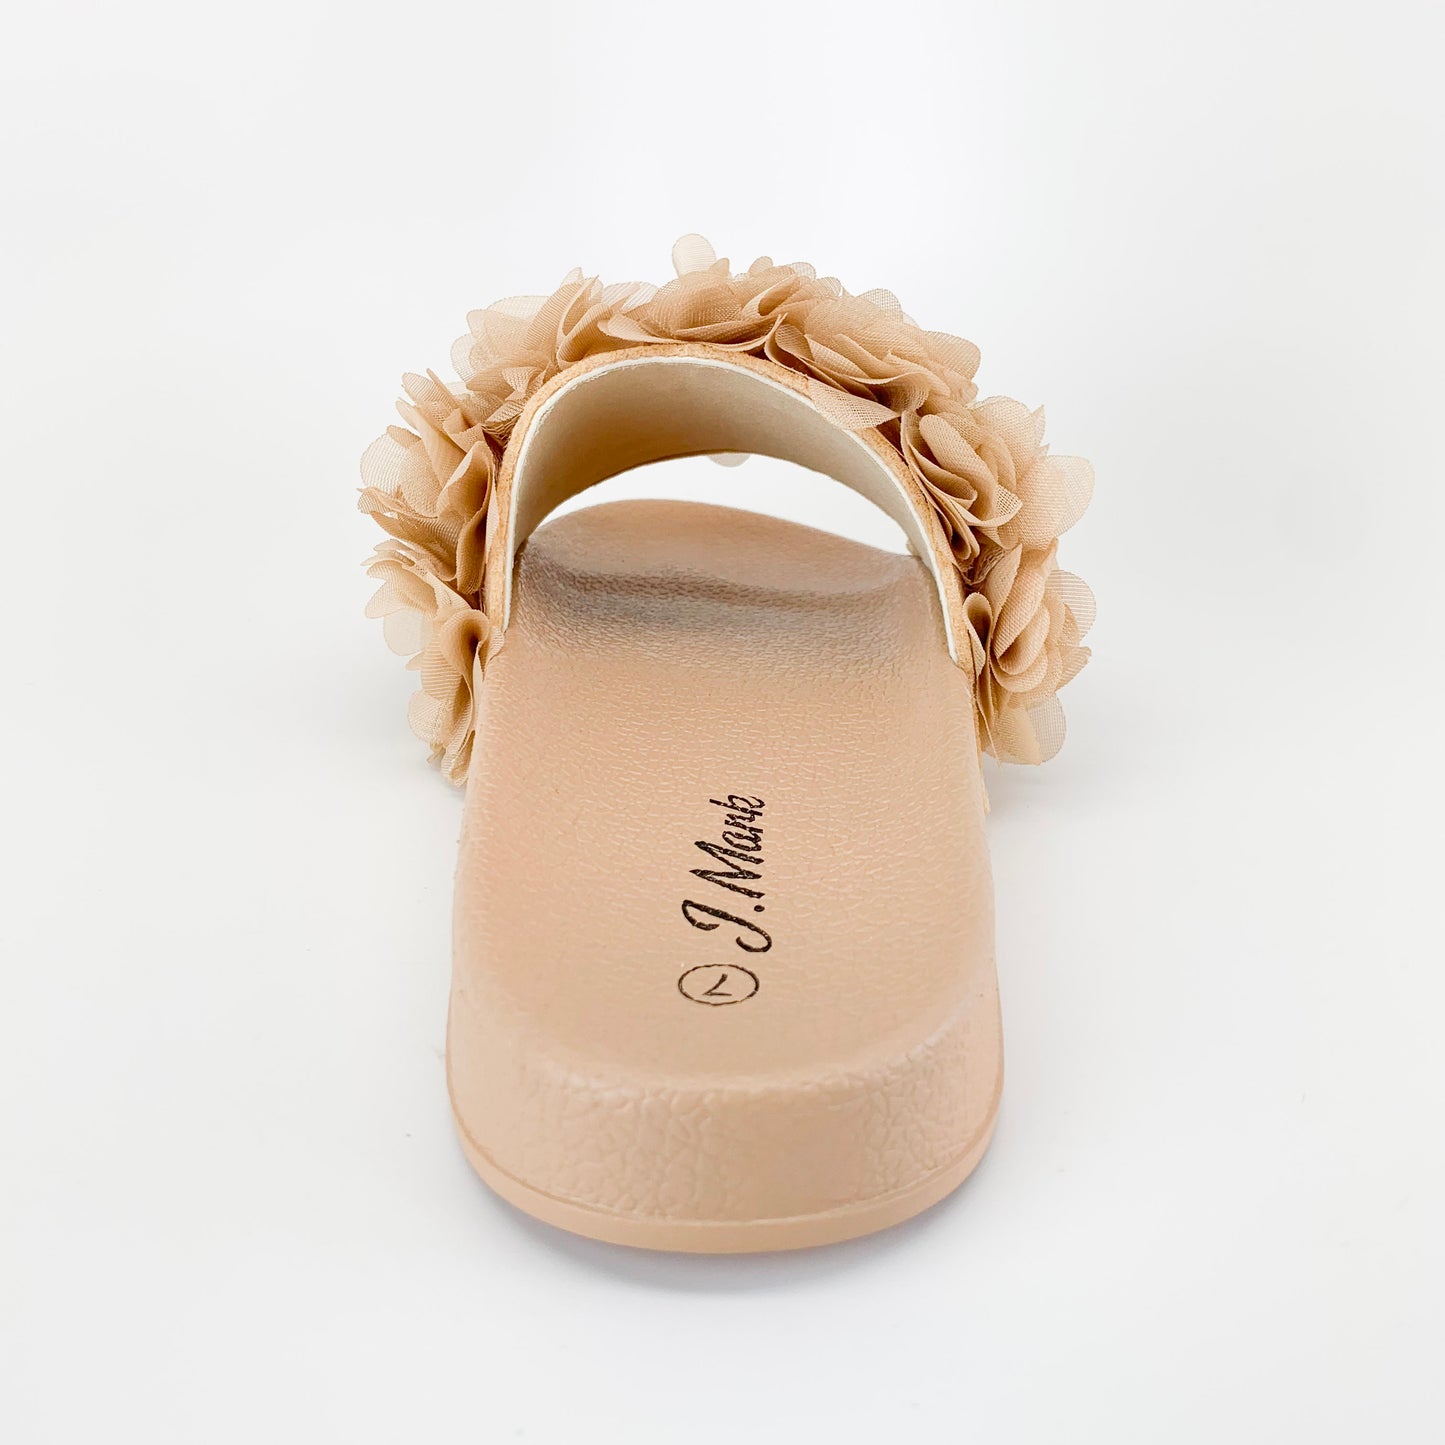 "Ellie" Floral Sandals